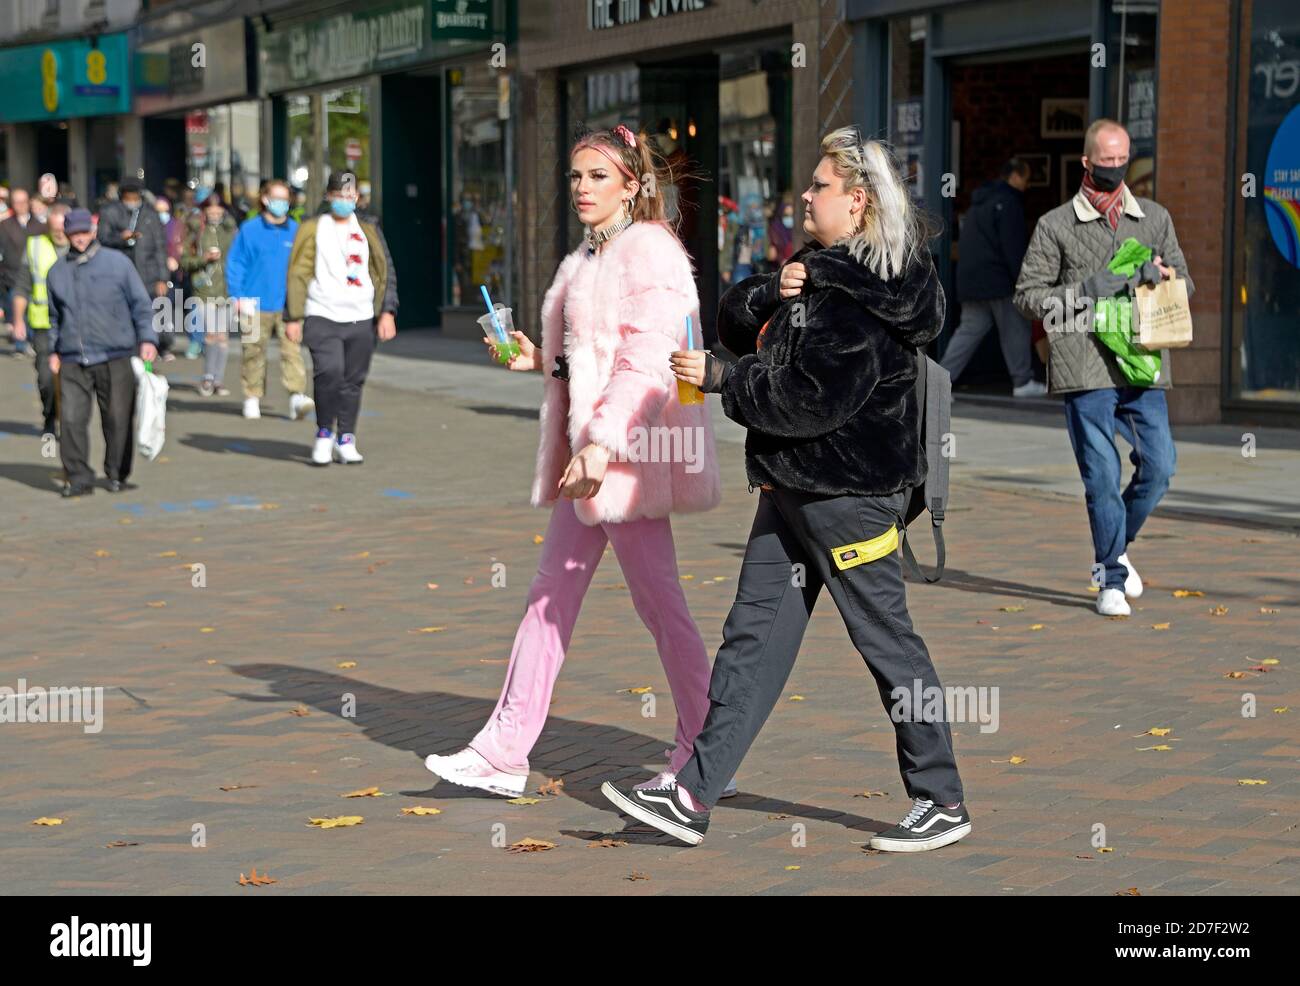 Junge Frauen in Kunstpelzjacken, die durch das Stadtzentrum hindurchstochen. Eine in Rosa, eine in Schwarz. Stockfoto